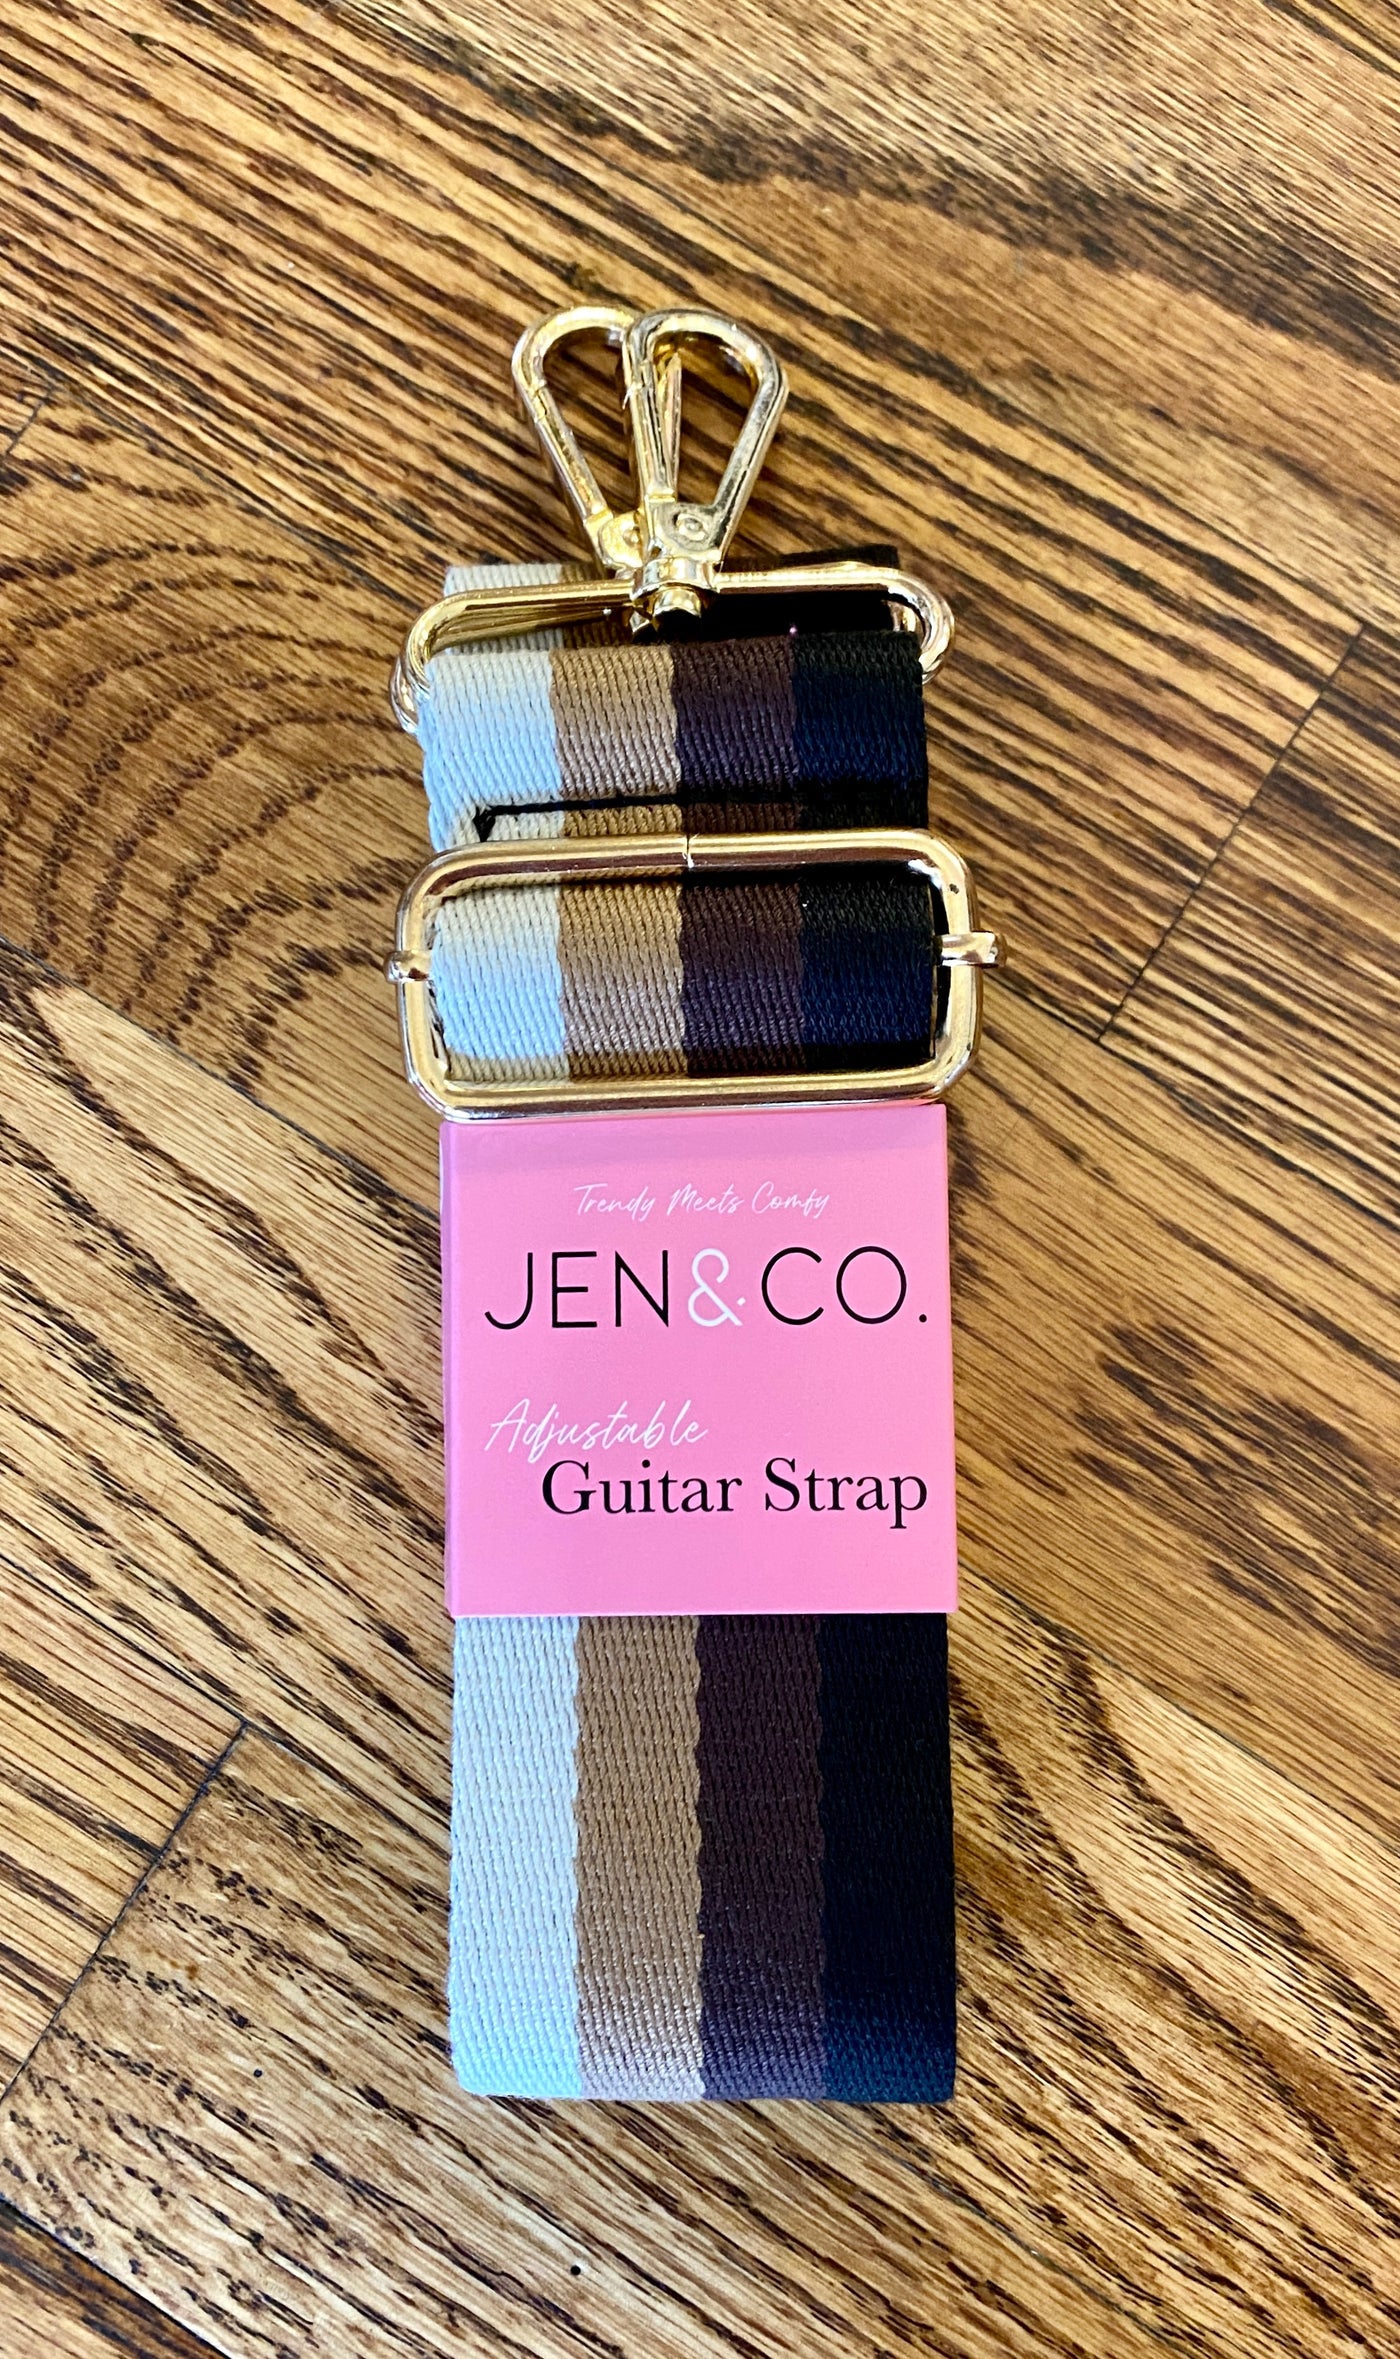 Floral Guitar Strap – Jen & Co.